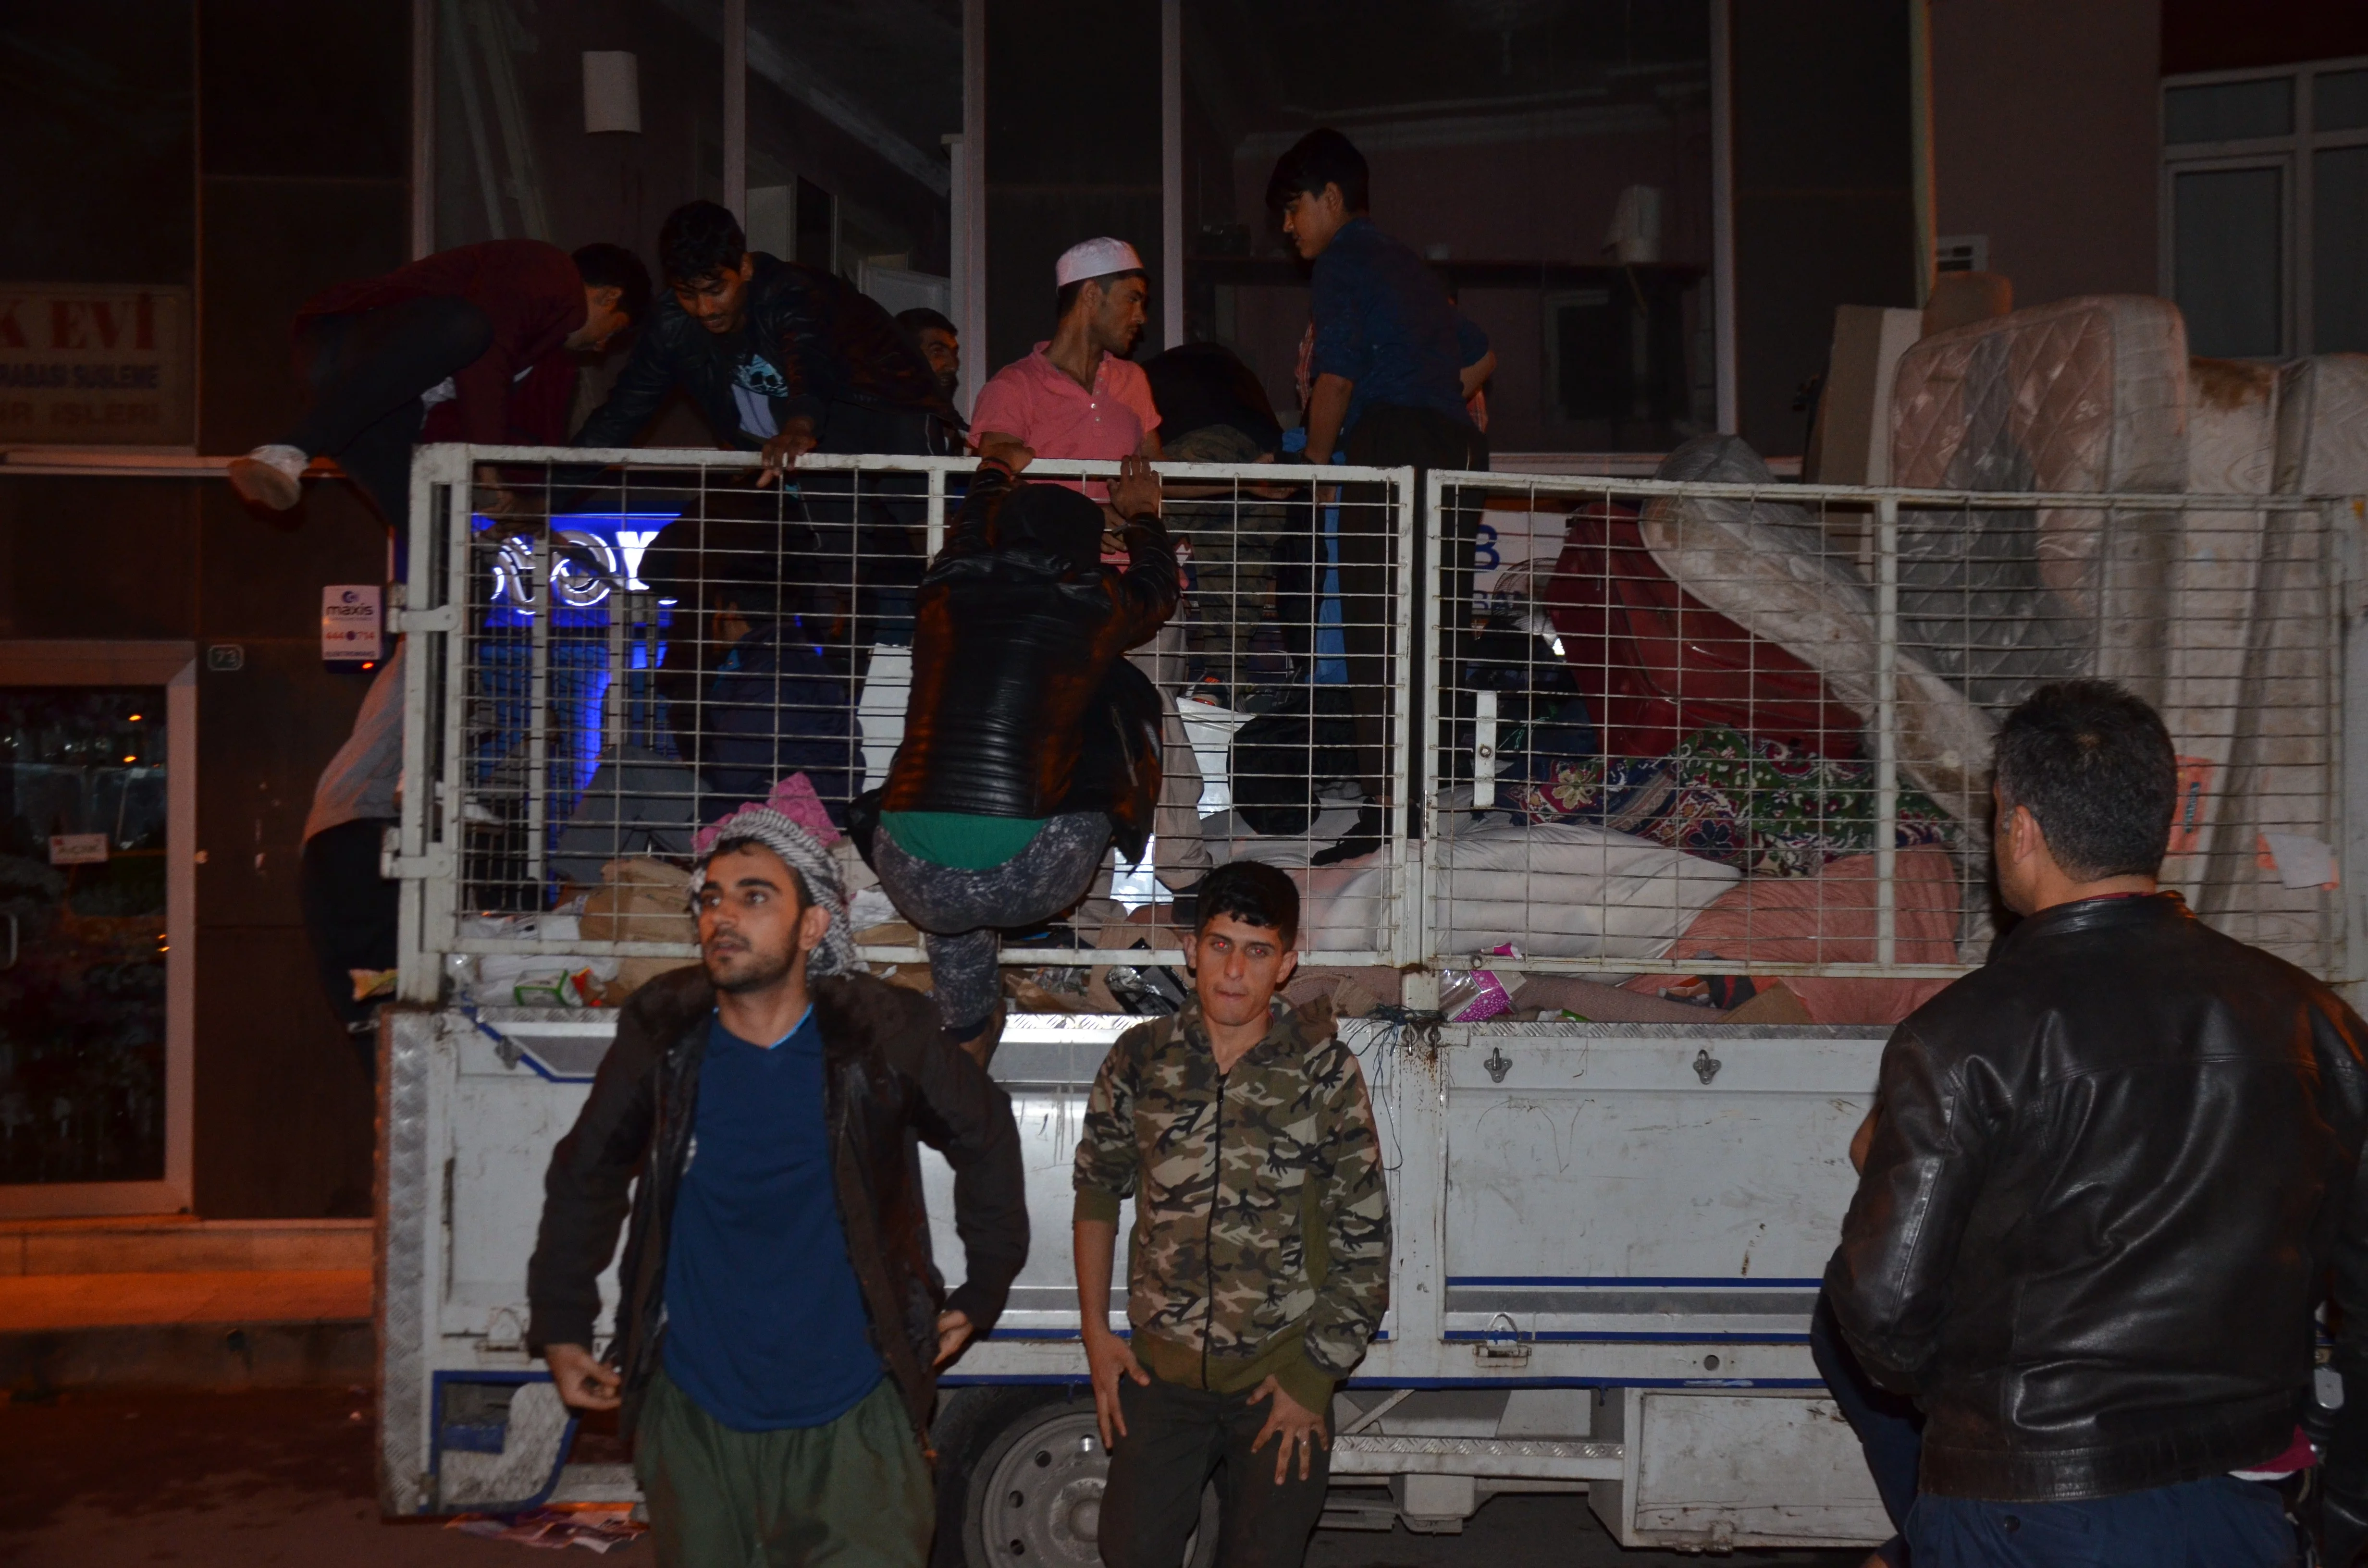 Kaçak göçmenleri tuvalet molası yakalattı